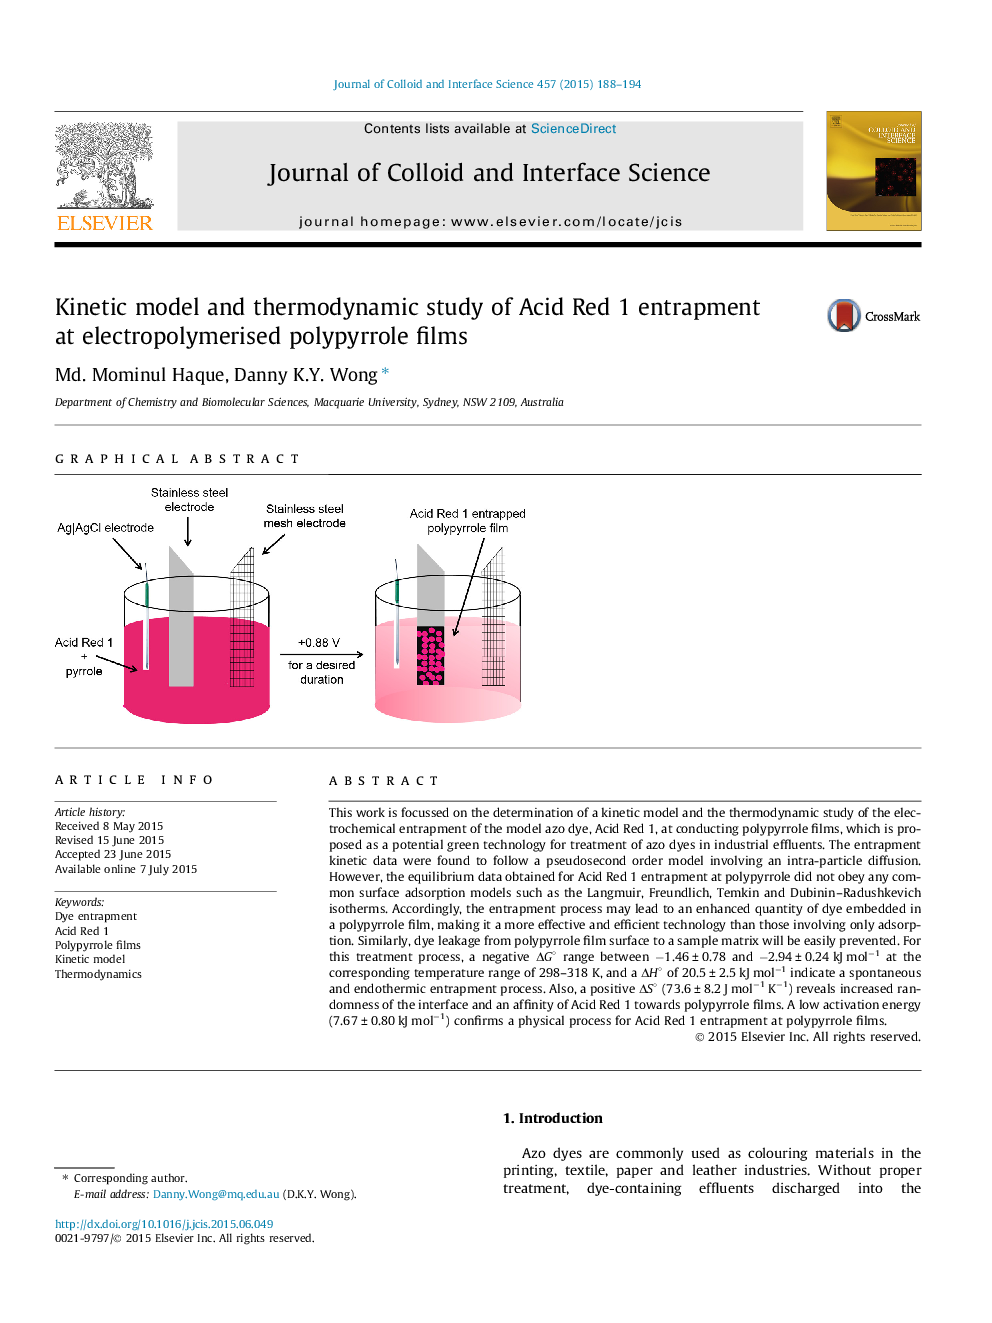 مدل سینتیکی و مطالعه ترمودینامیکی جذب اسید قرمز 1 در فیلم پلی پیلر الکترو پلیمر 